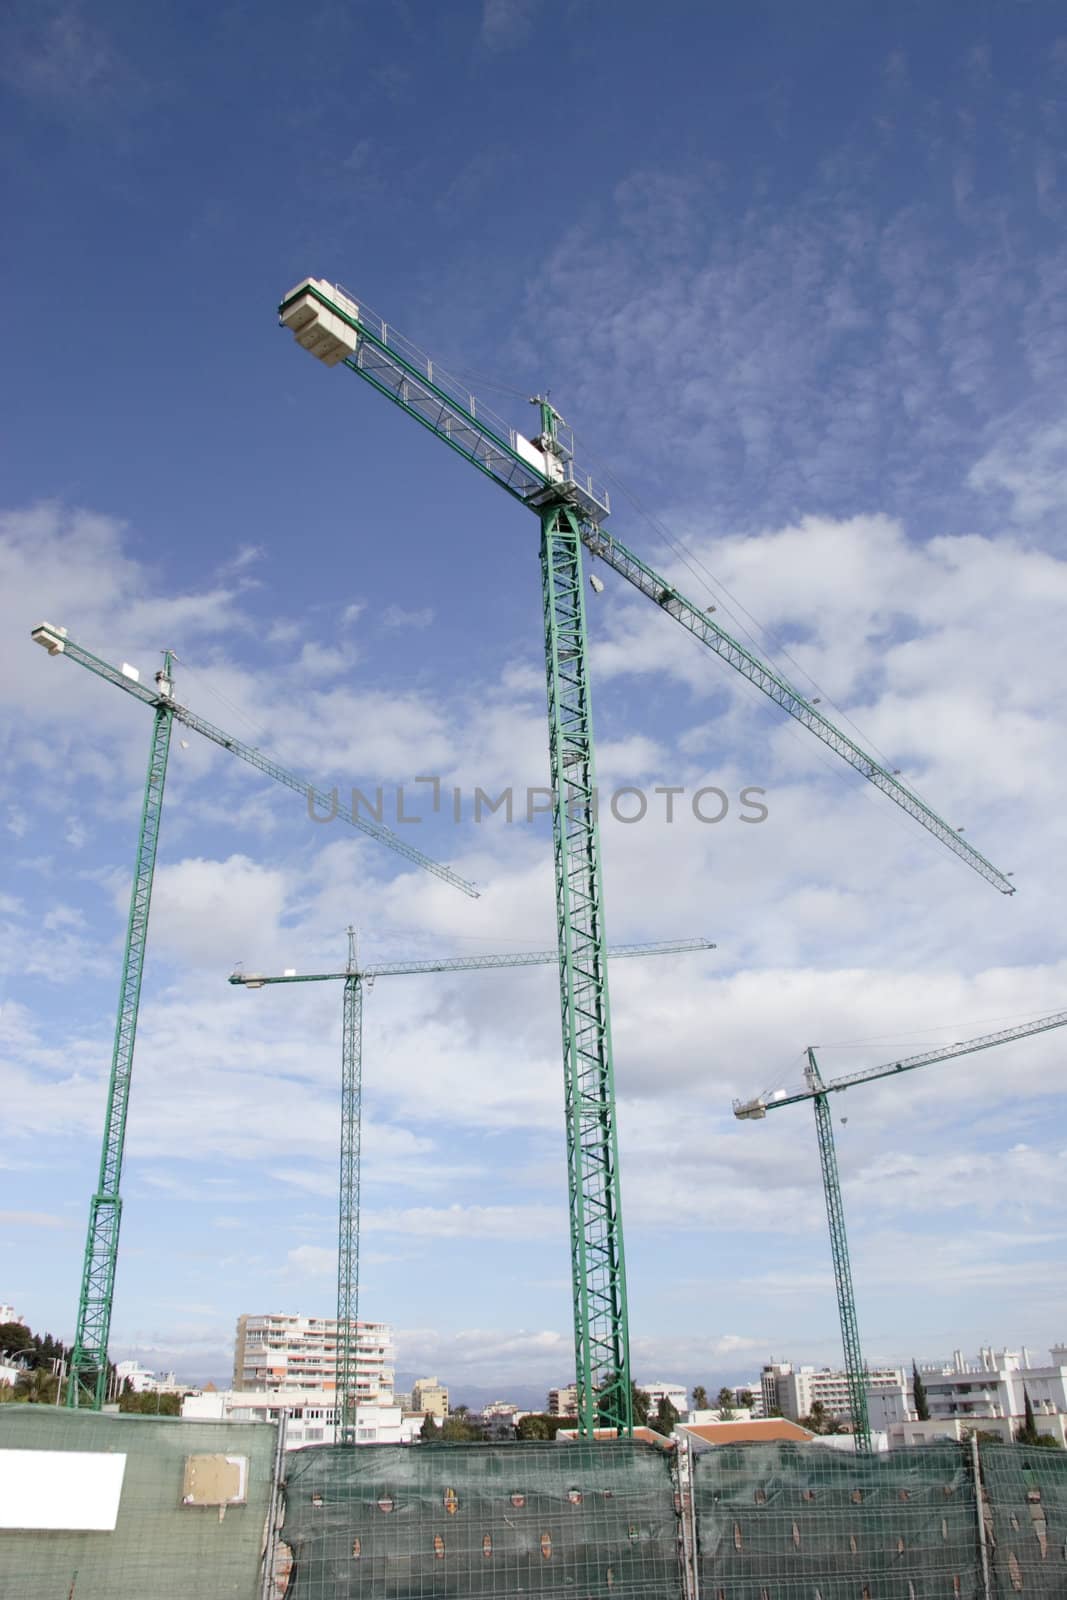 four large cranes on a construction site